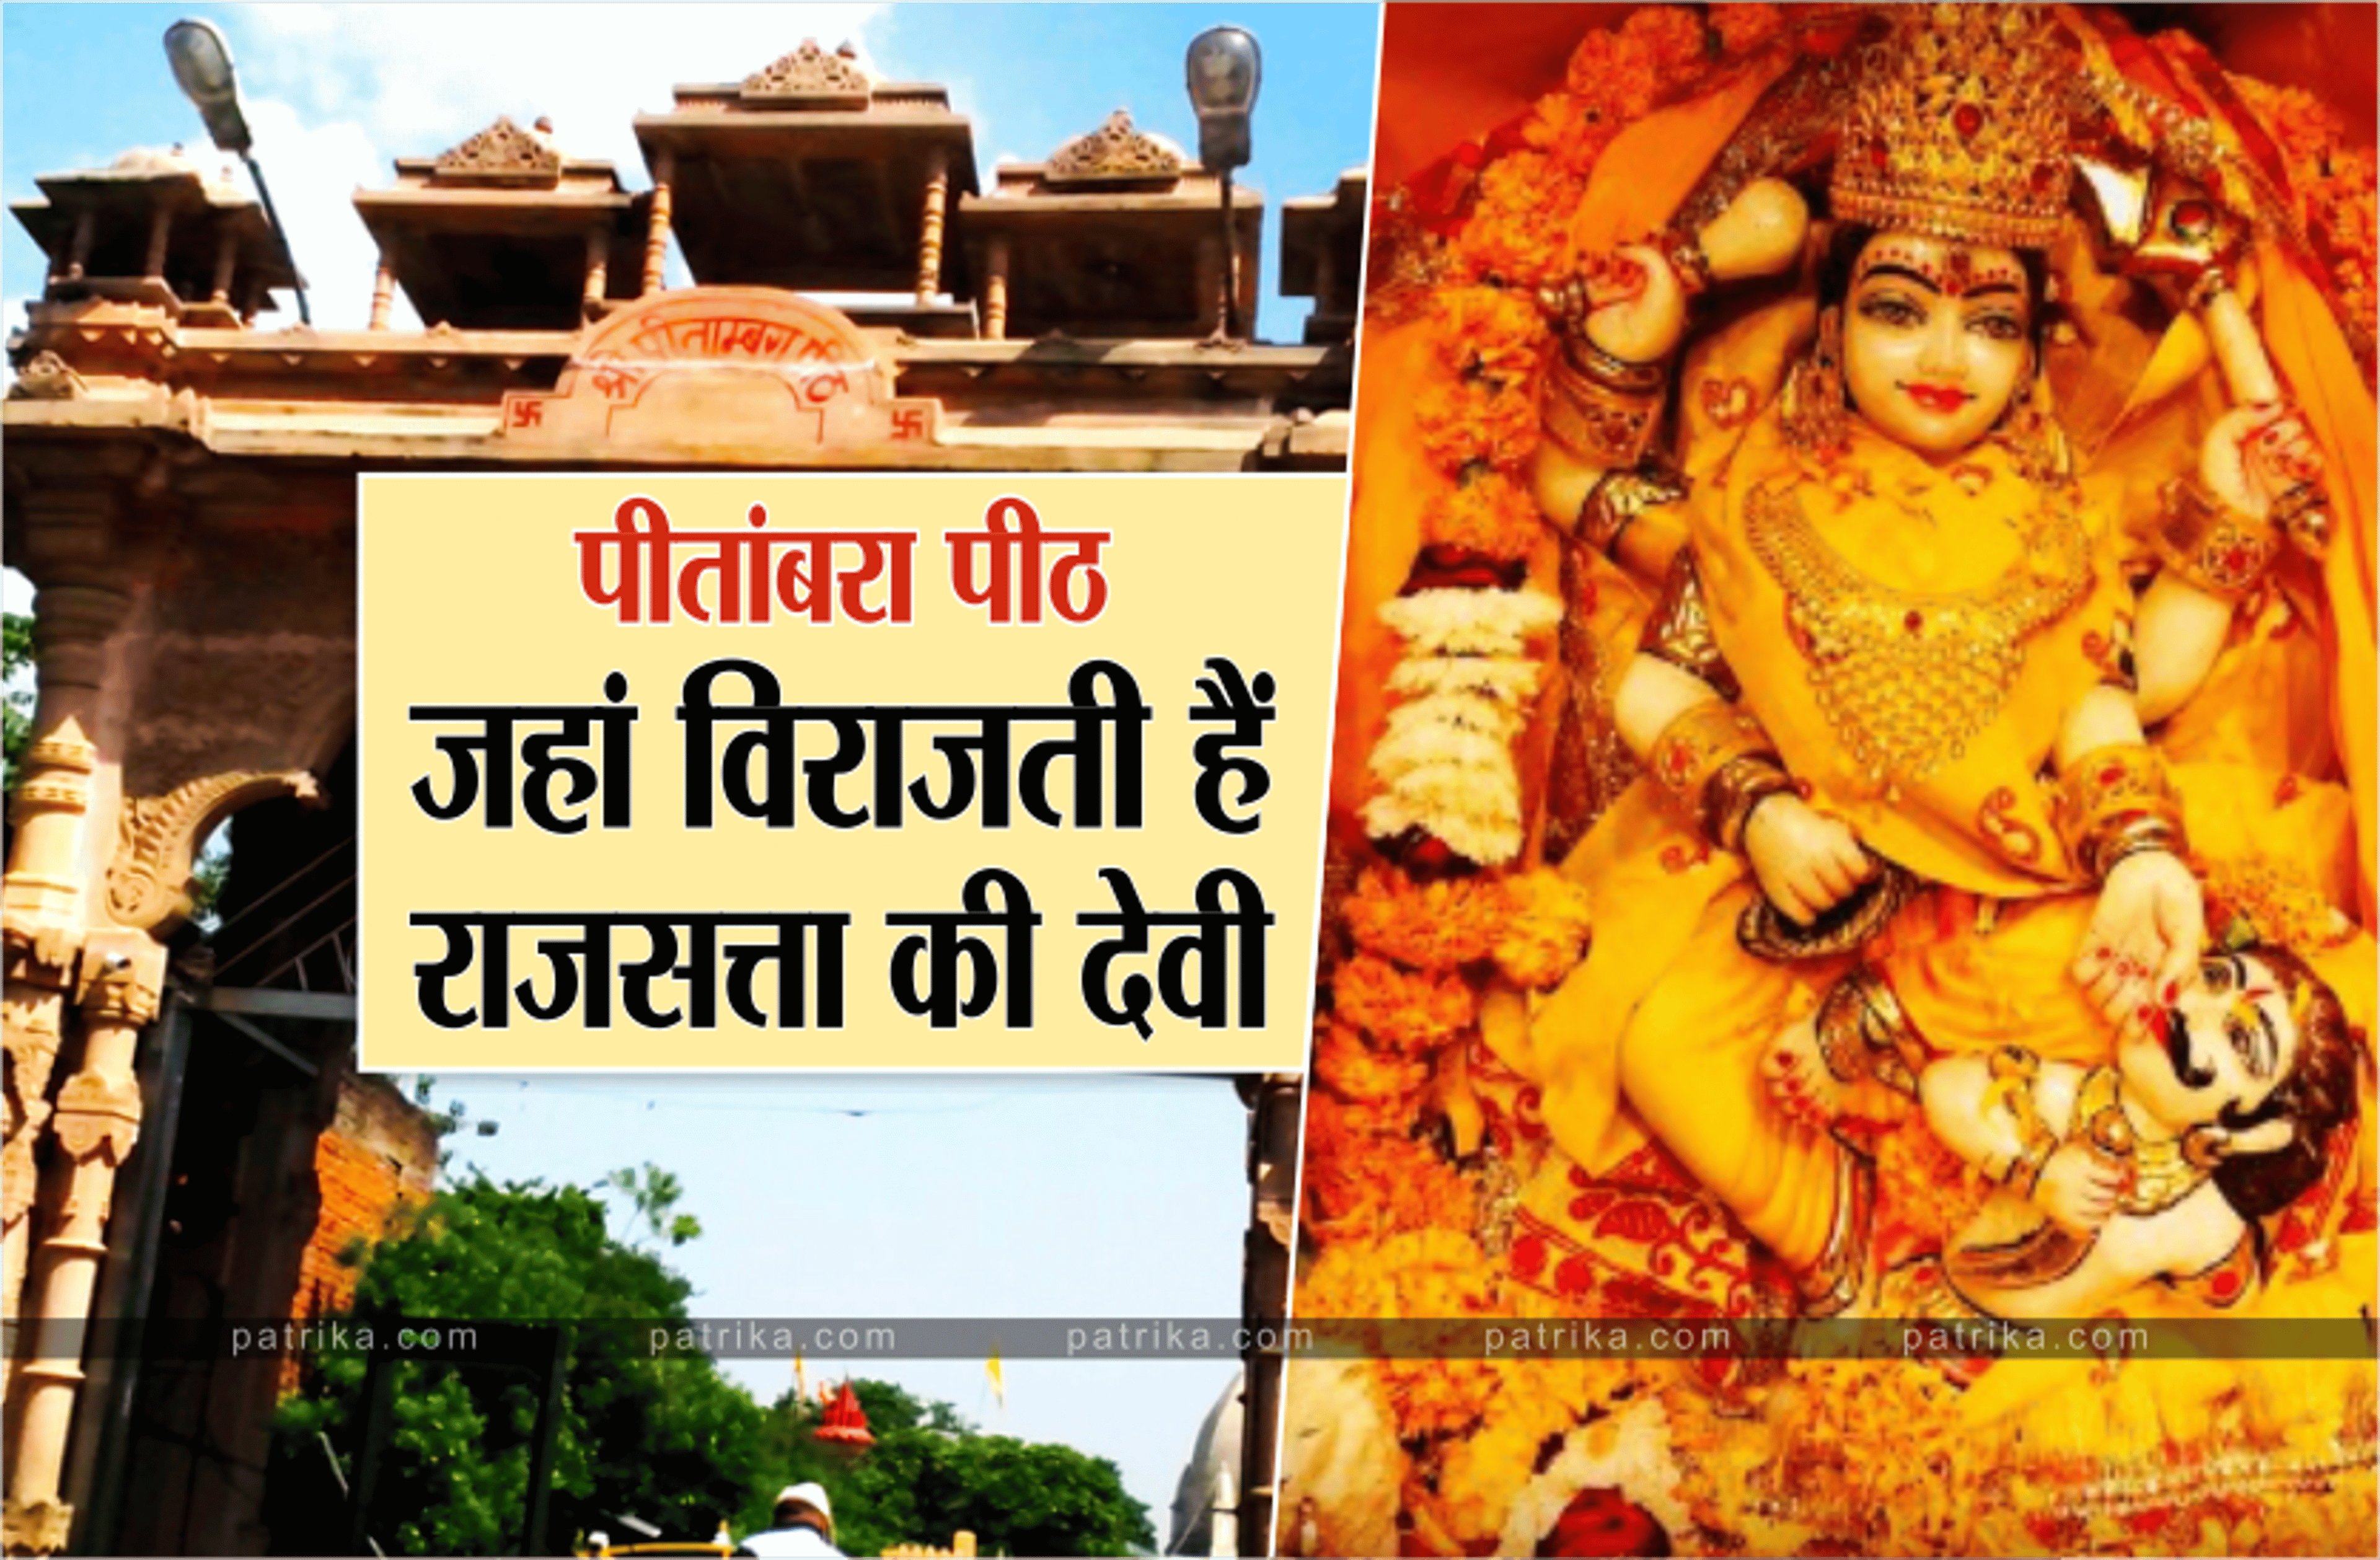 Pitambara Temple Datia: पीतांबरा पीठ की देवी मां बगलामुखी, जानें क्यों कहलाती
हैं राजसत्ता की देवी?